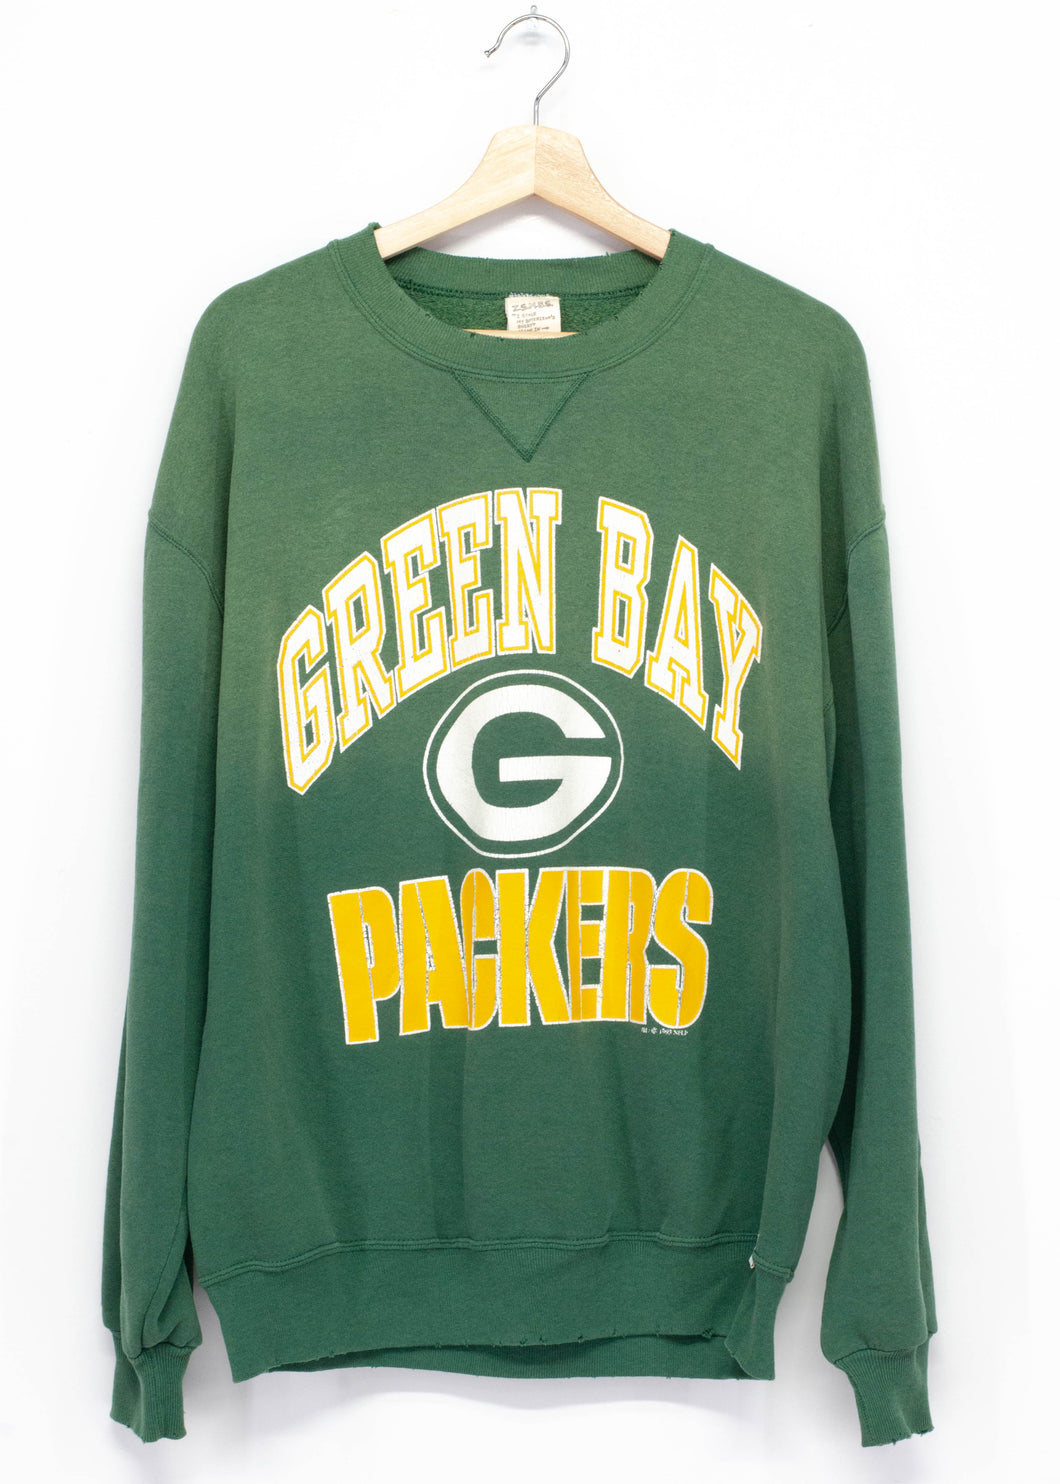 retro green bay packers sweatshirt